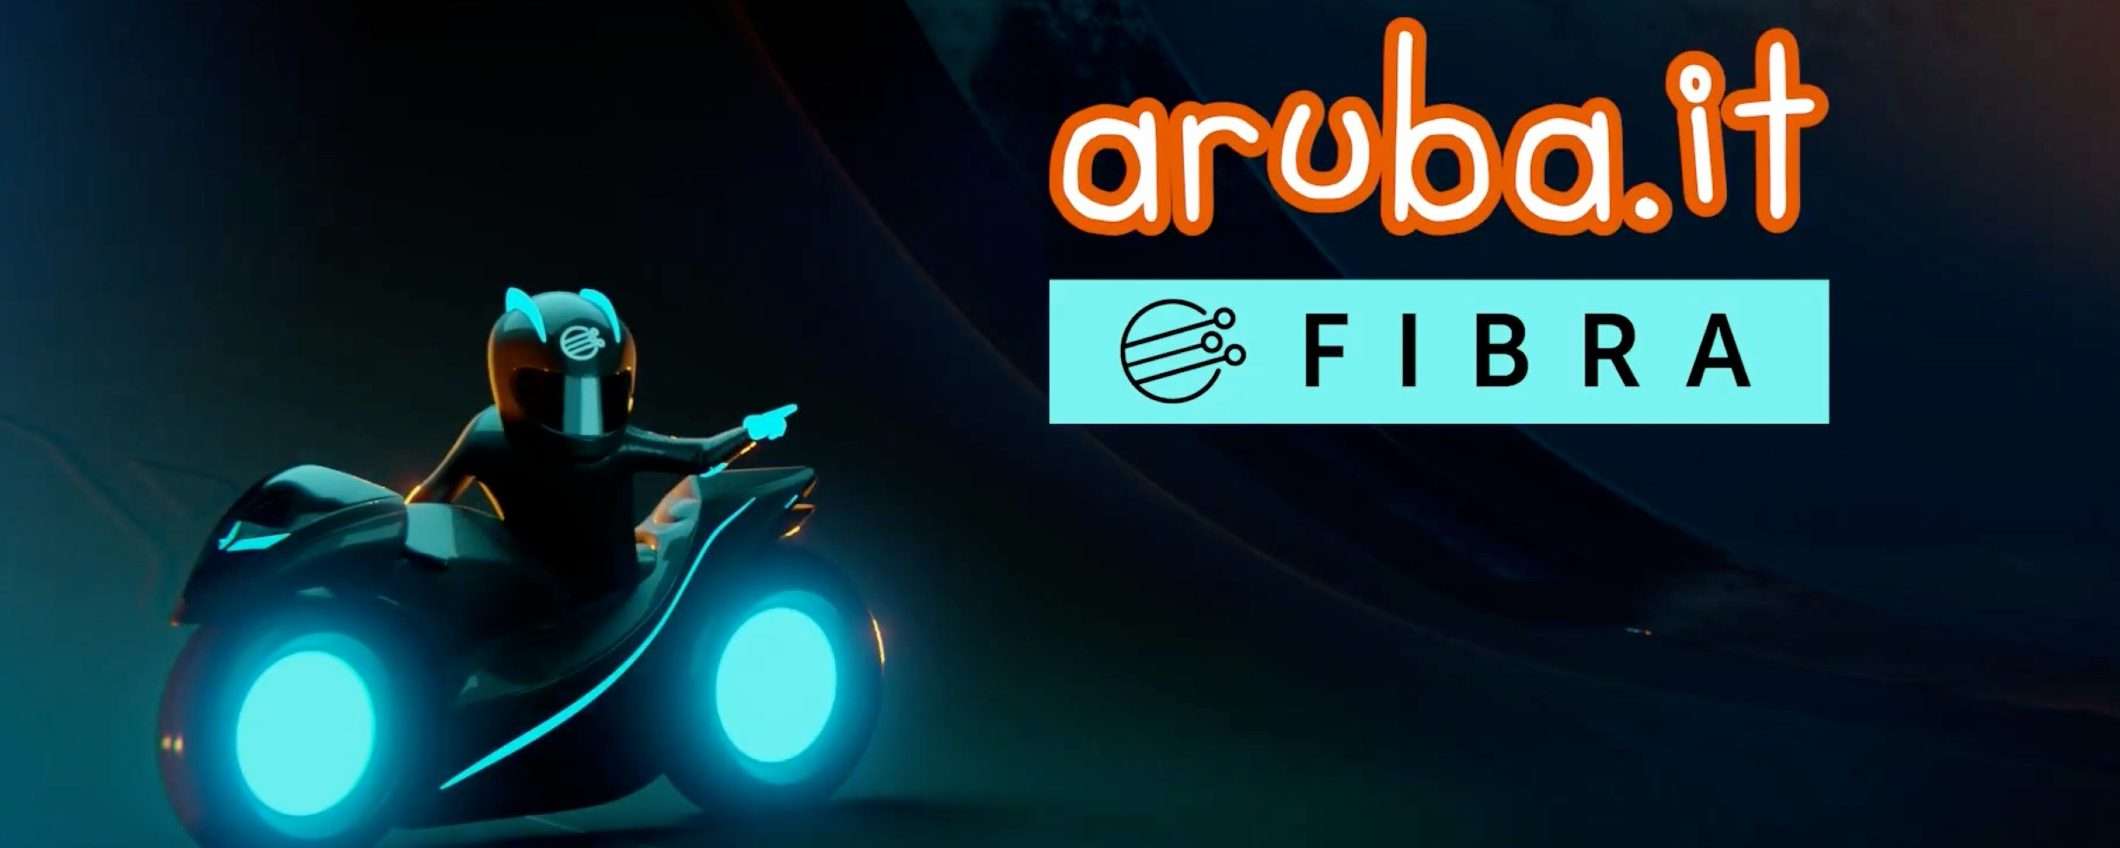 Aruba: la Fibra ideale per lo streaming di qualità